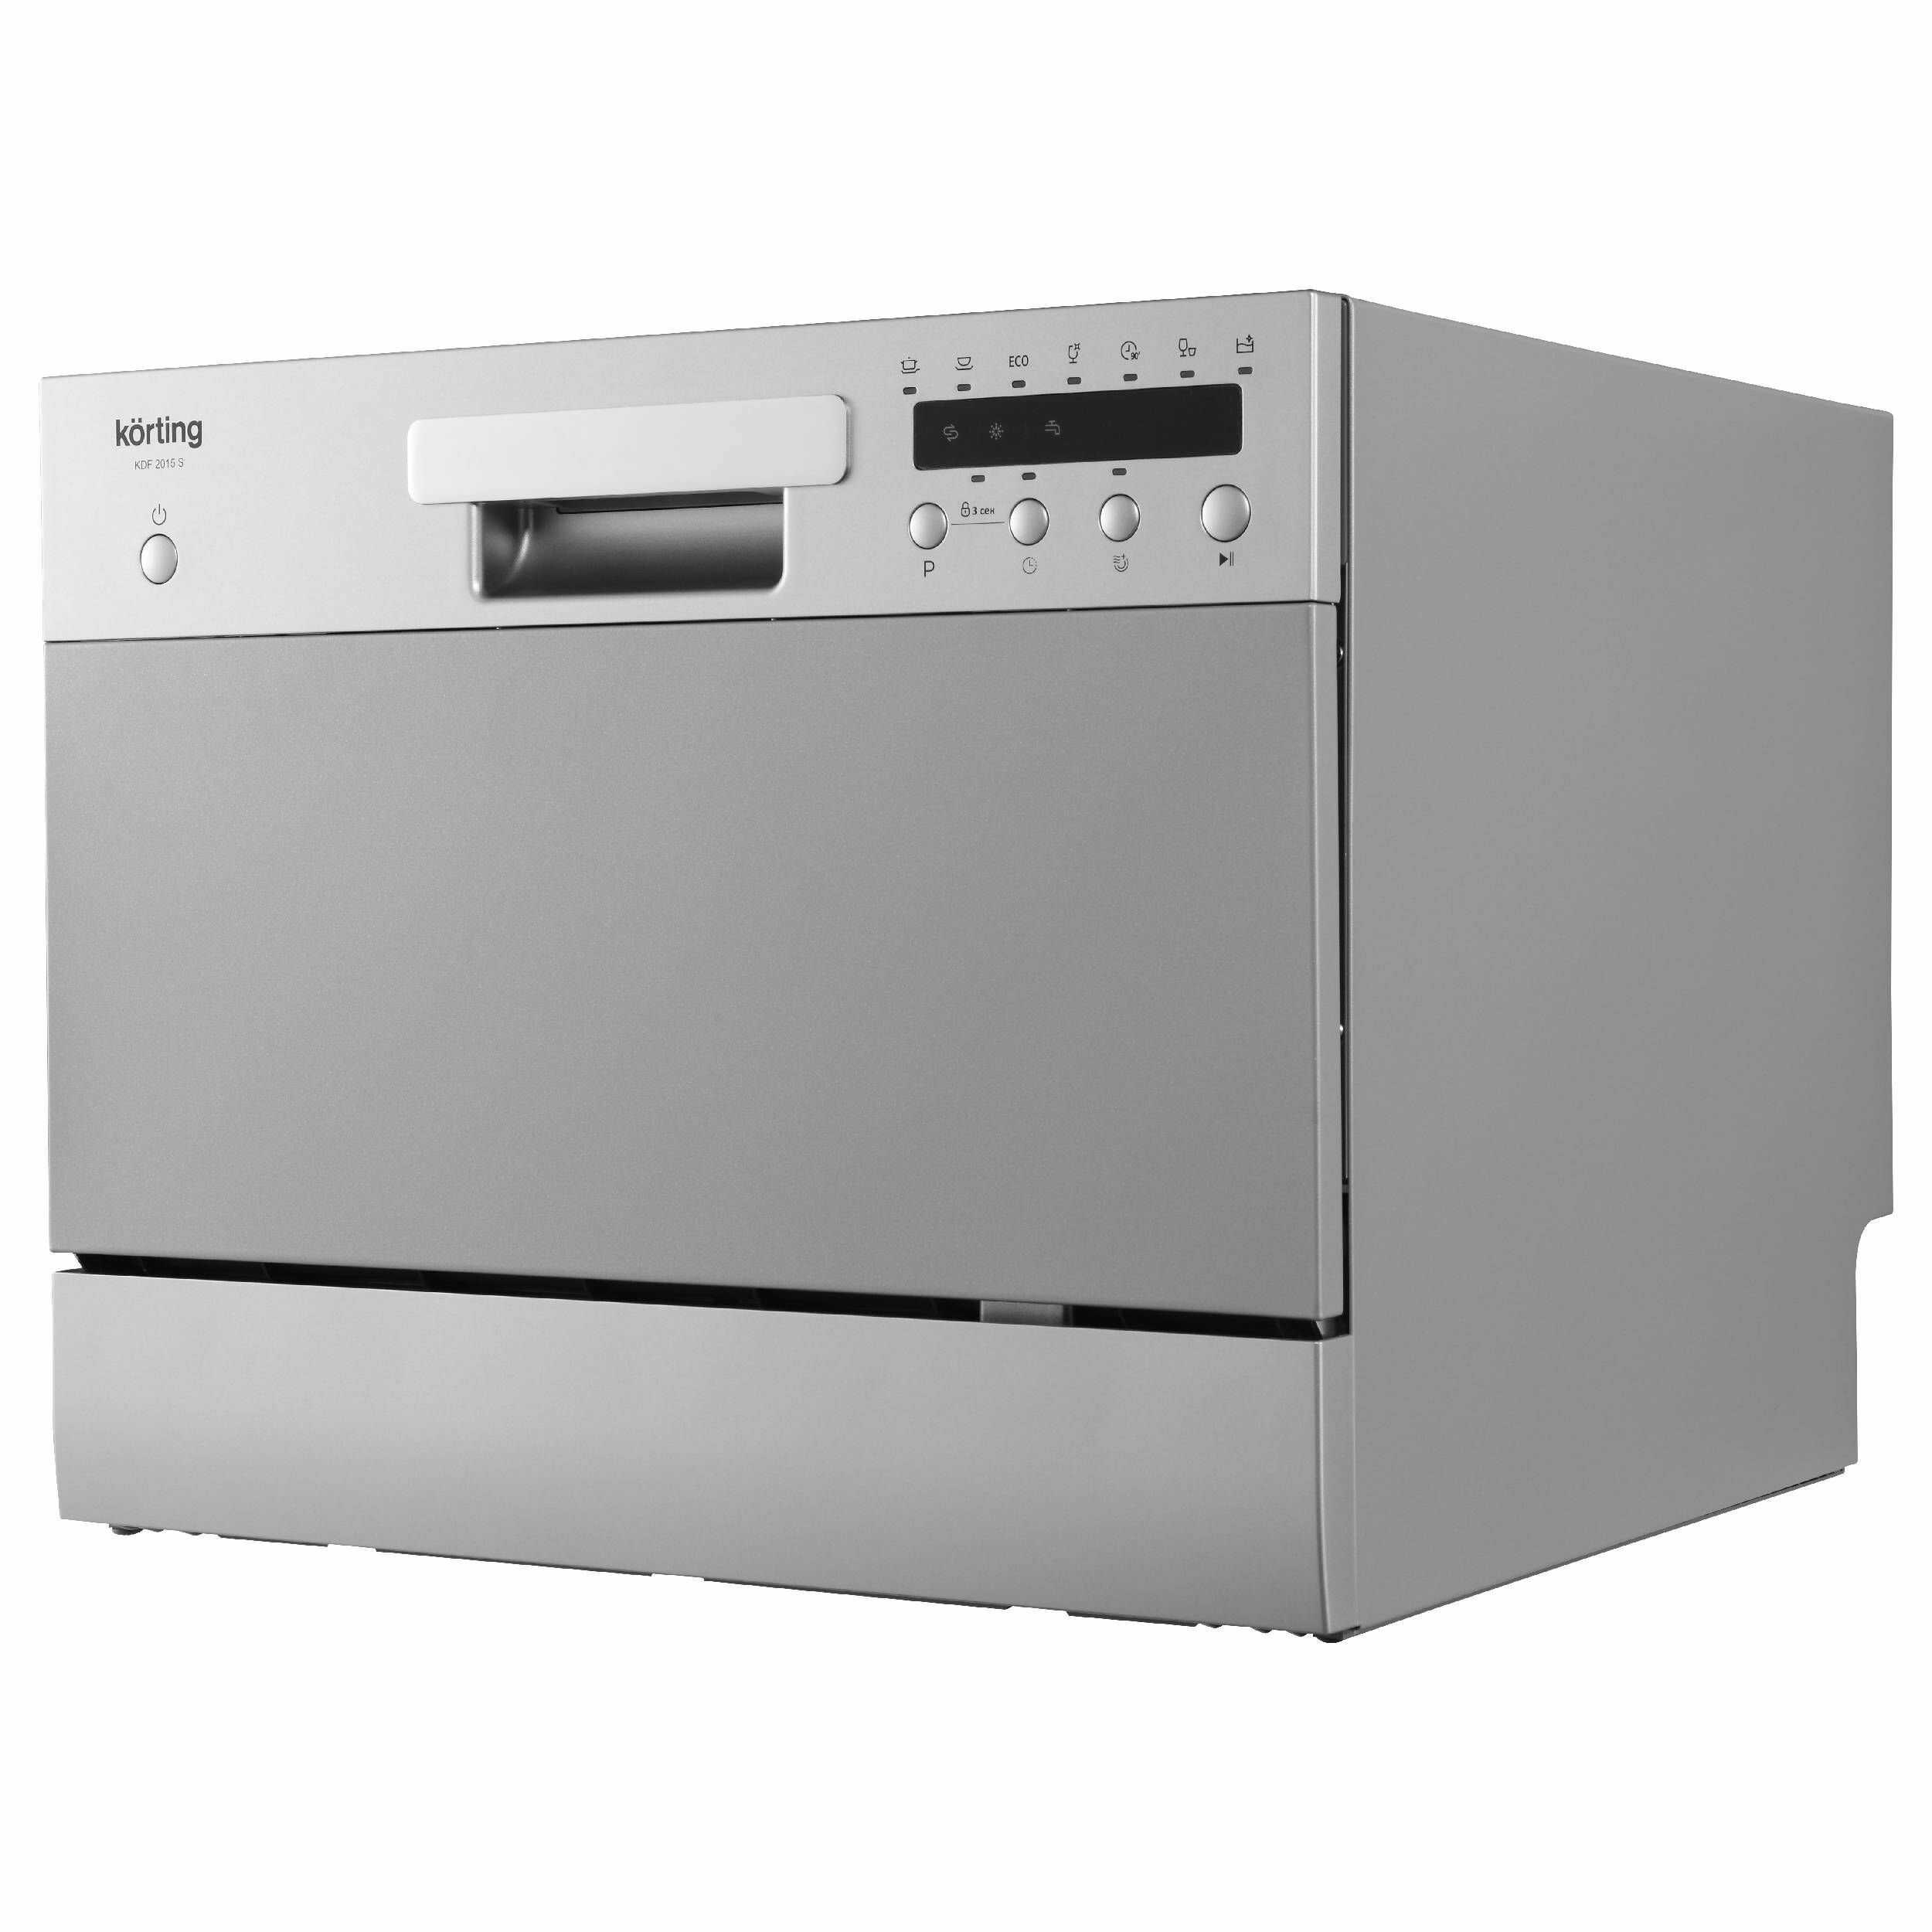 Компактная посудомоечная машина KORTING KDF 2015 S, 7 программ мойки, камера на 6 комплектов, защиты от протечек AquaControl, таймер, функция 3 в 1